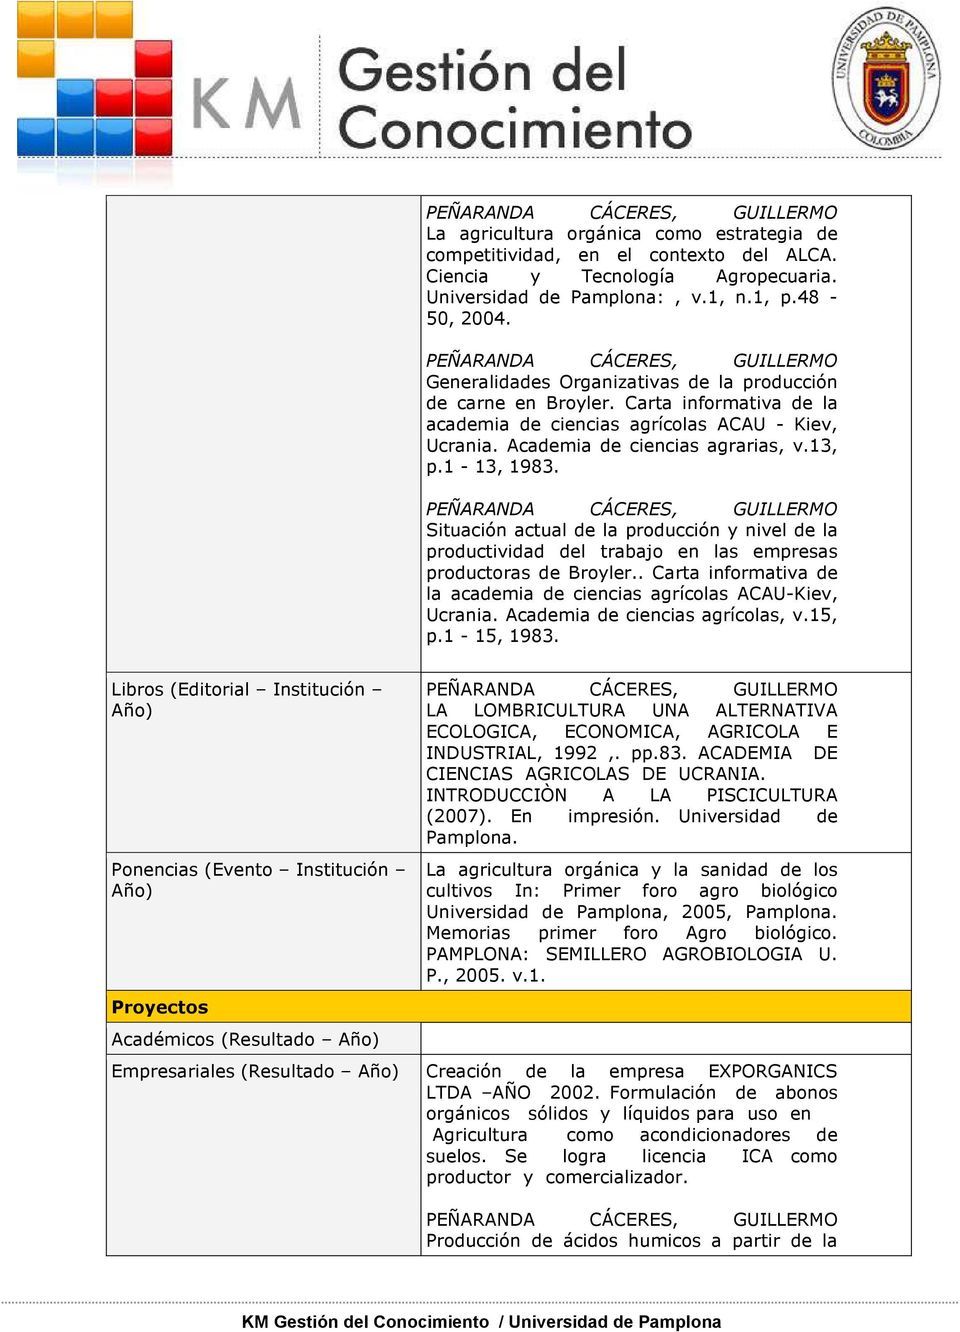 Situación actual de la producción y nivel de la productividad del trabajo en las empresas productoras de Broyler.. Carta informativa de la academia de ciencias agrícolas ACAU-Kiev, Ucrania.